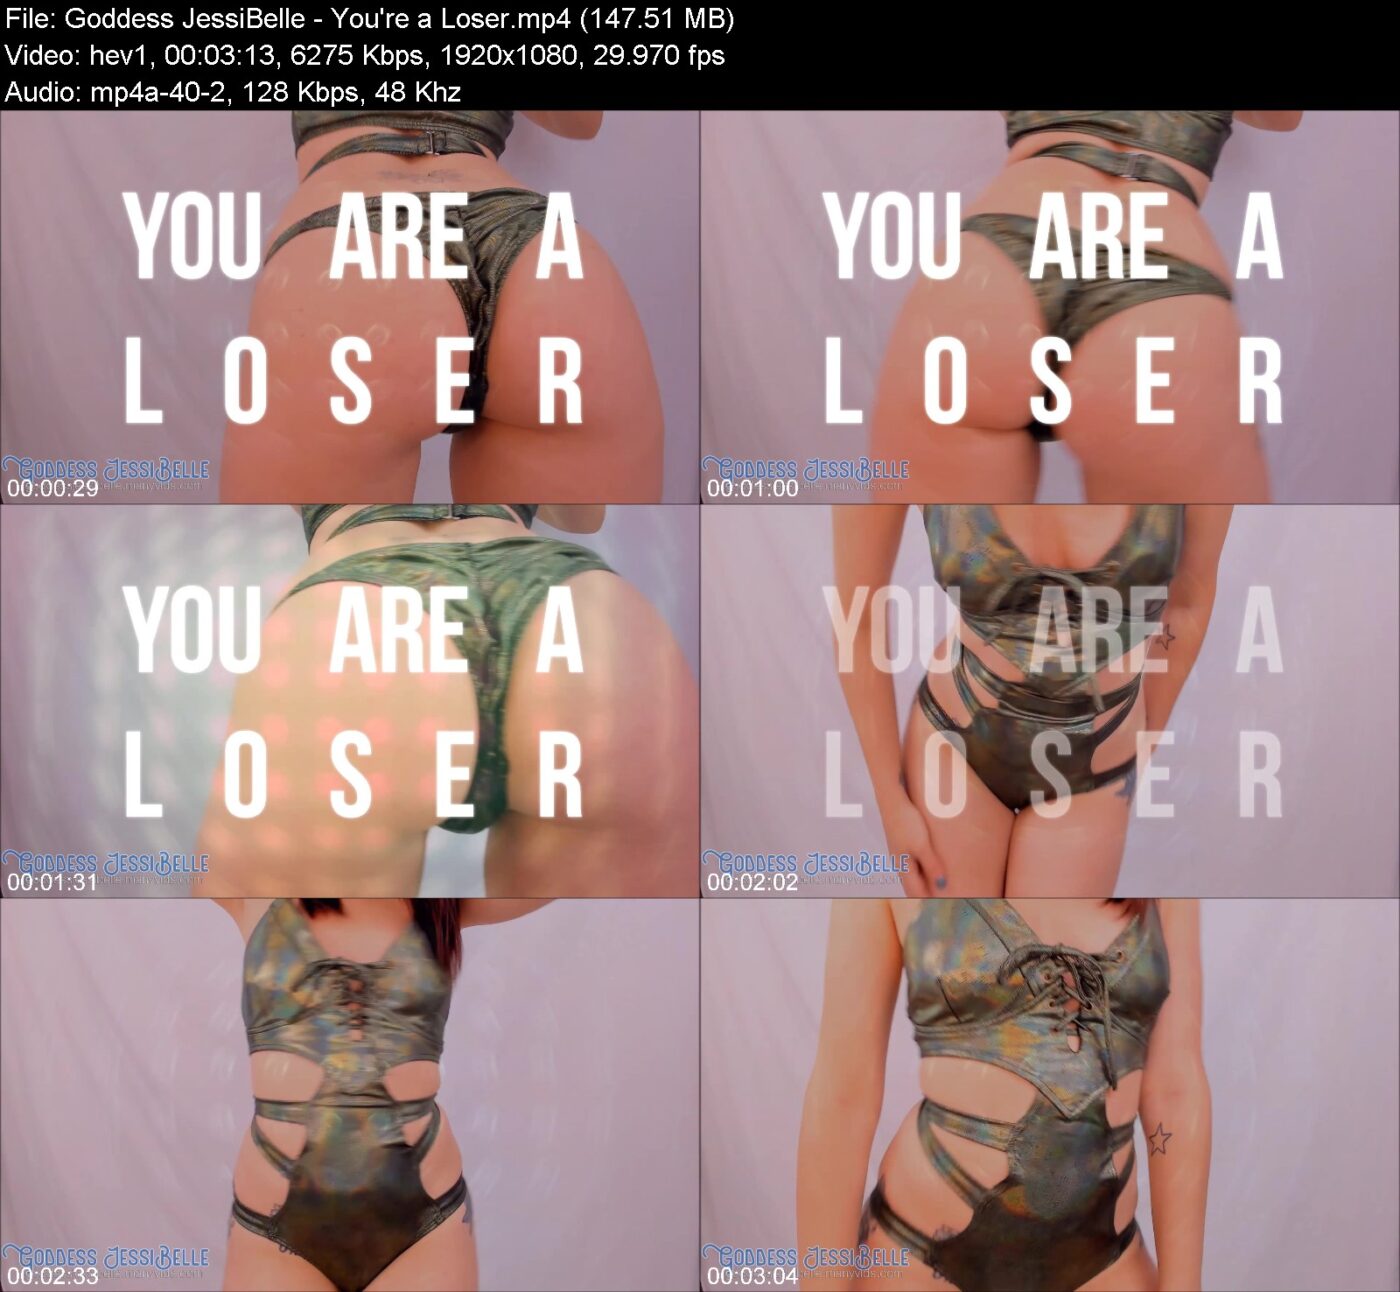 Goddess JessiBelle - You're a Loser